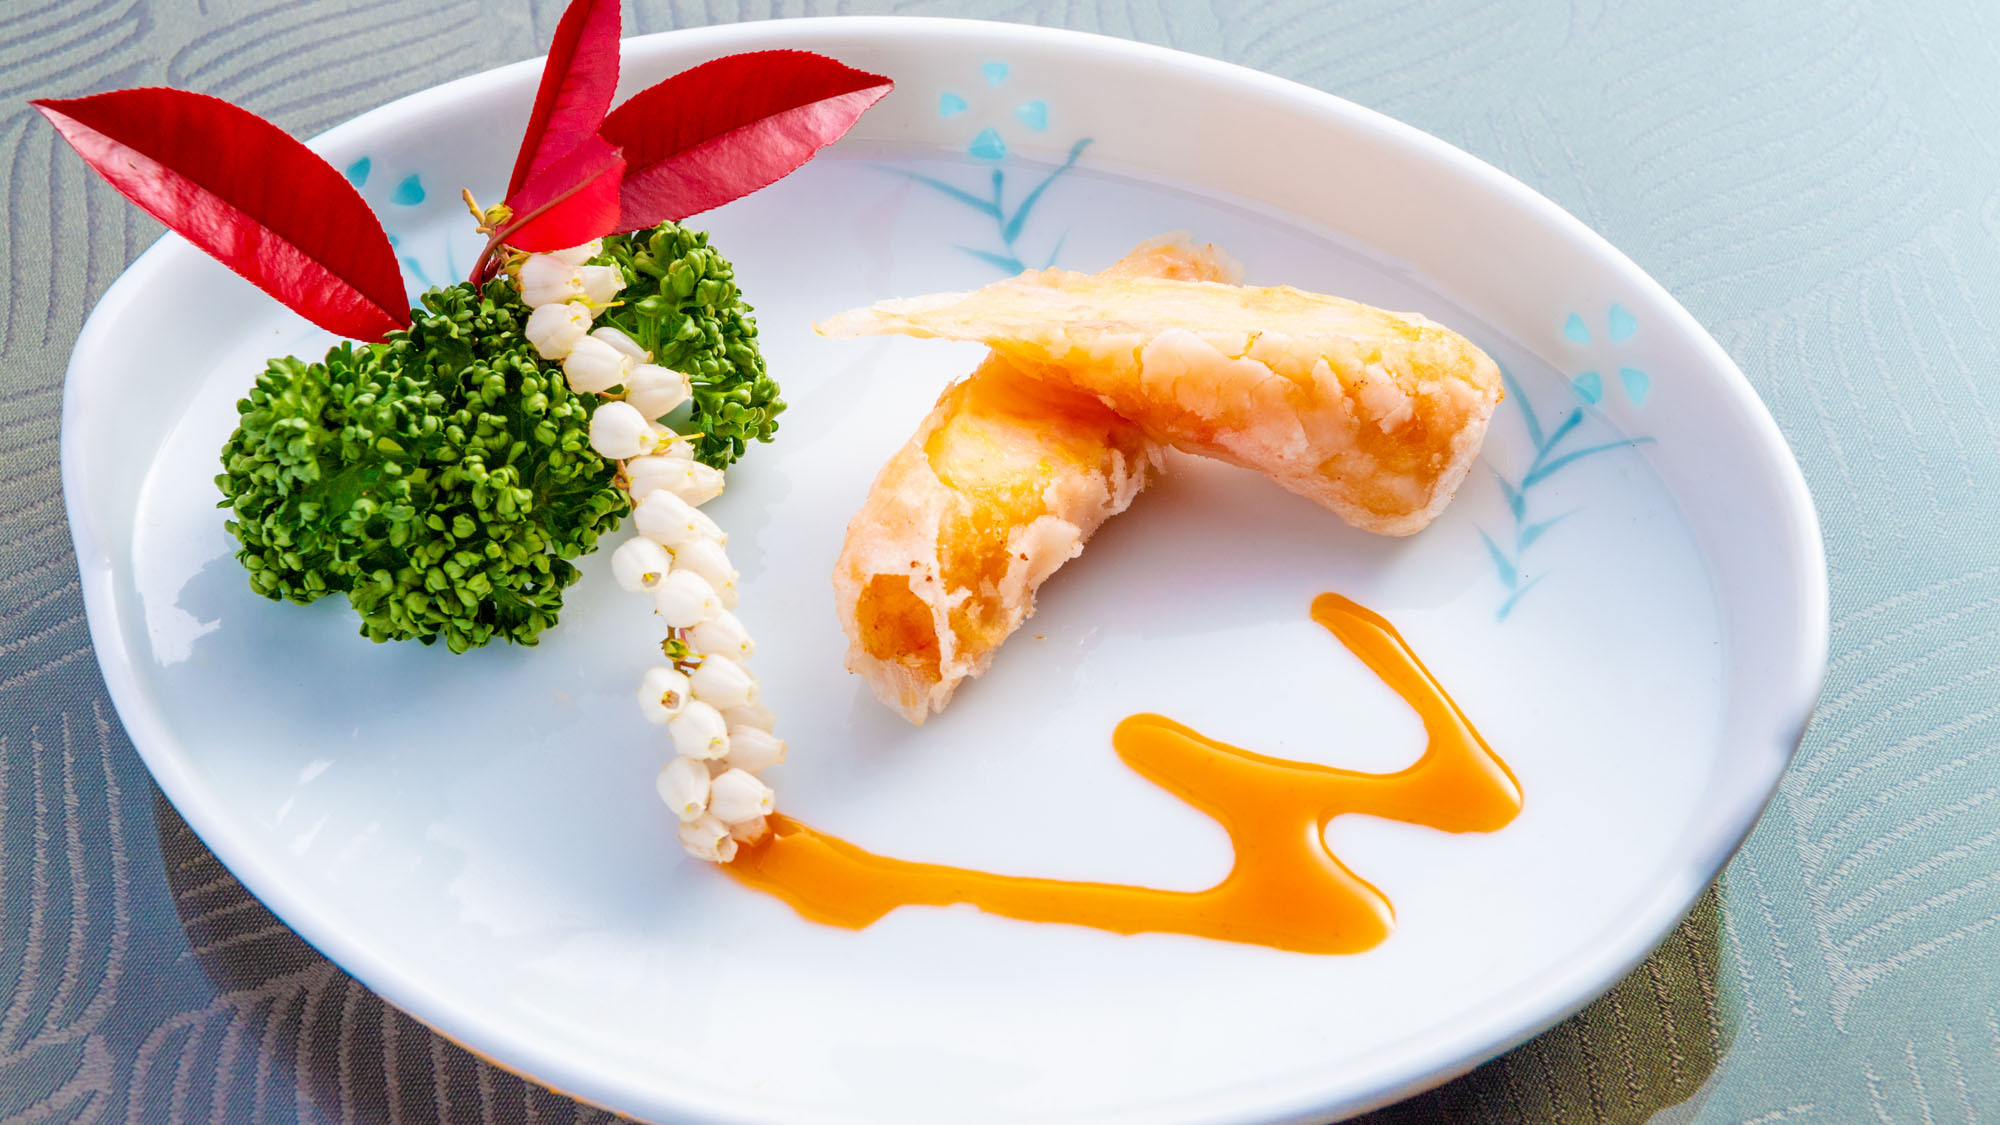 本格中華料理をベースに伊勢志摩の新鮮な食材を用いた創作料理をお楽しみください。